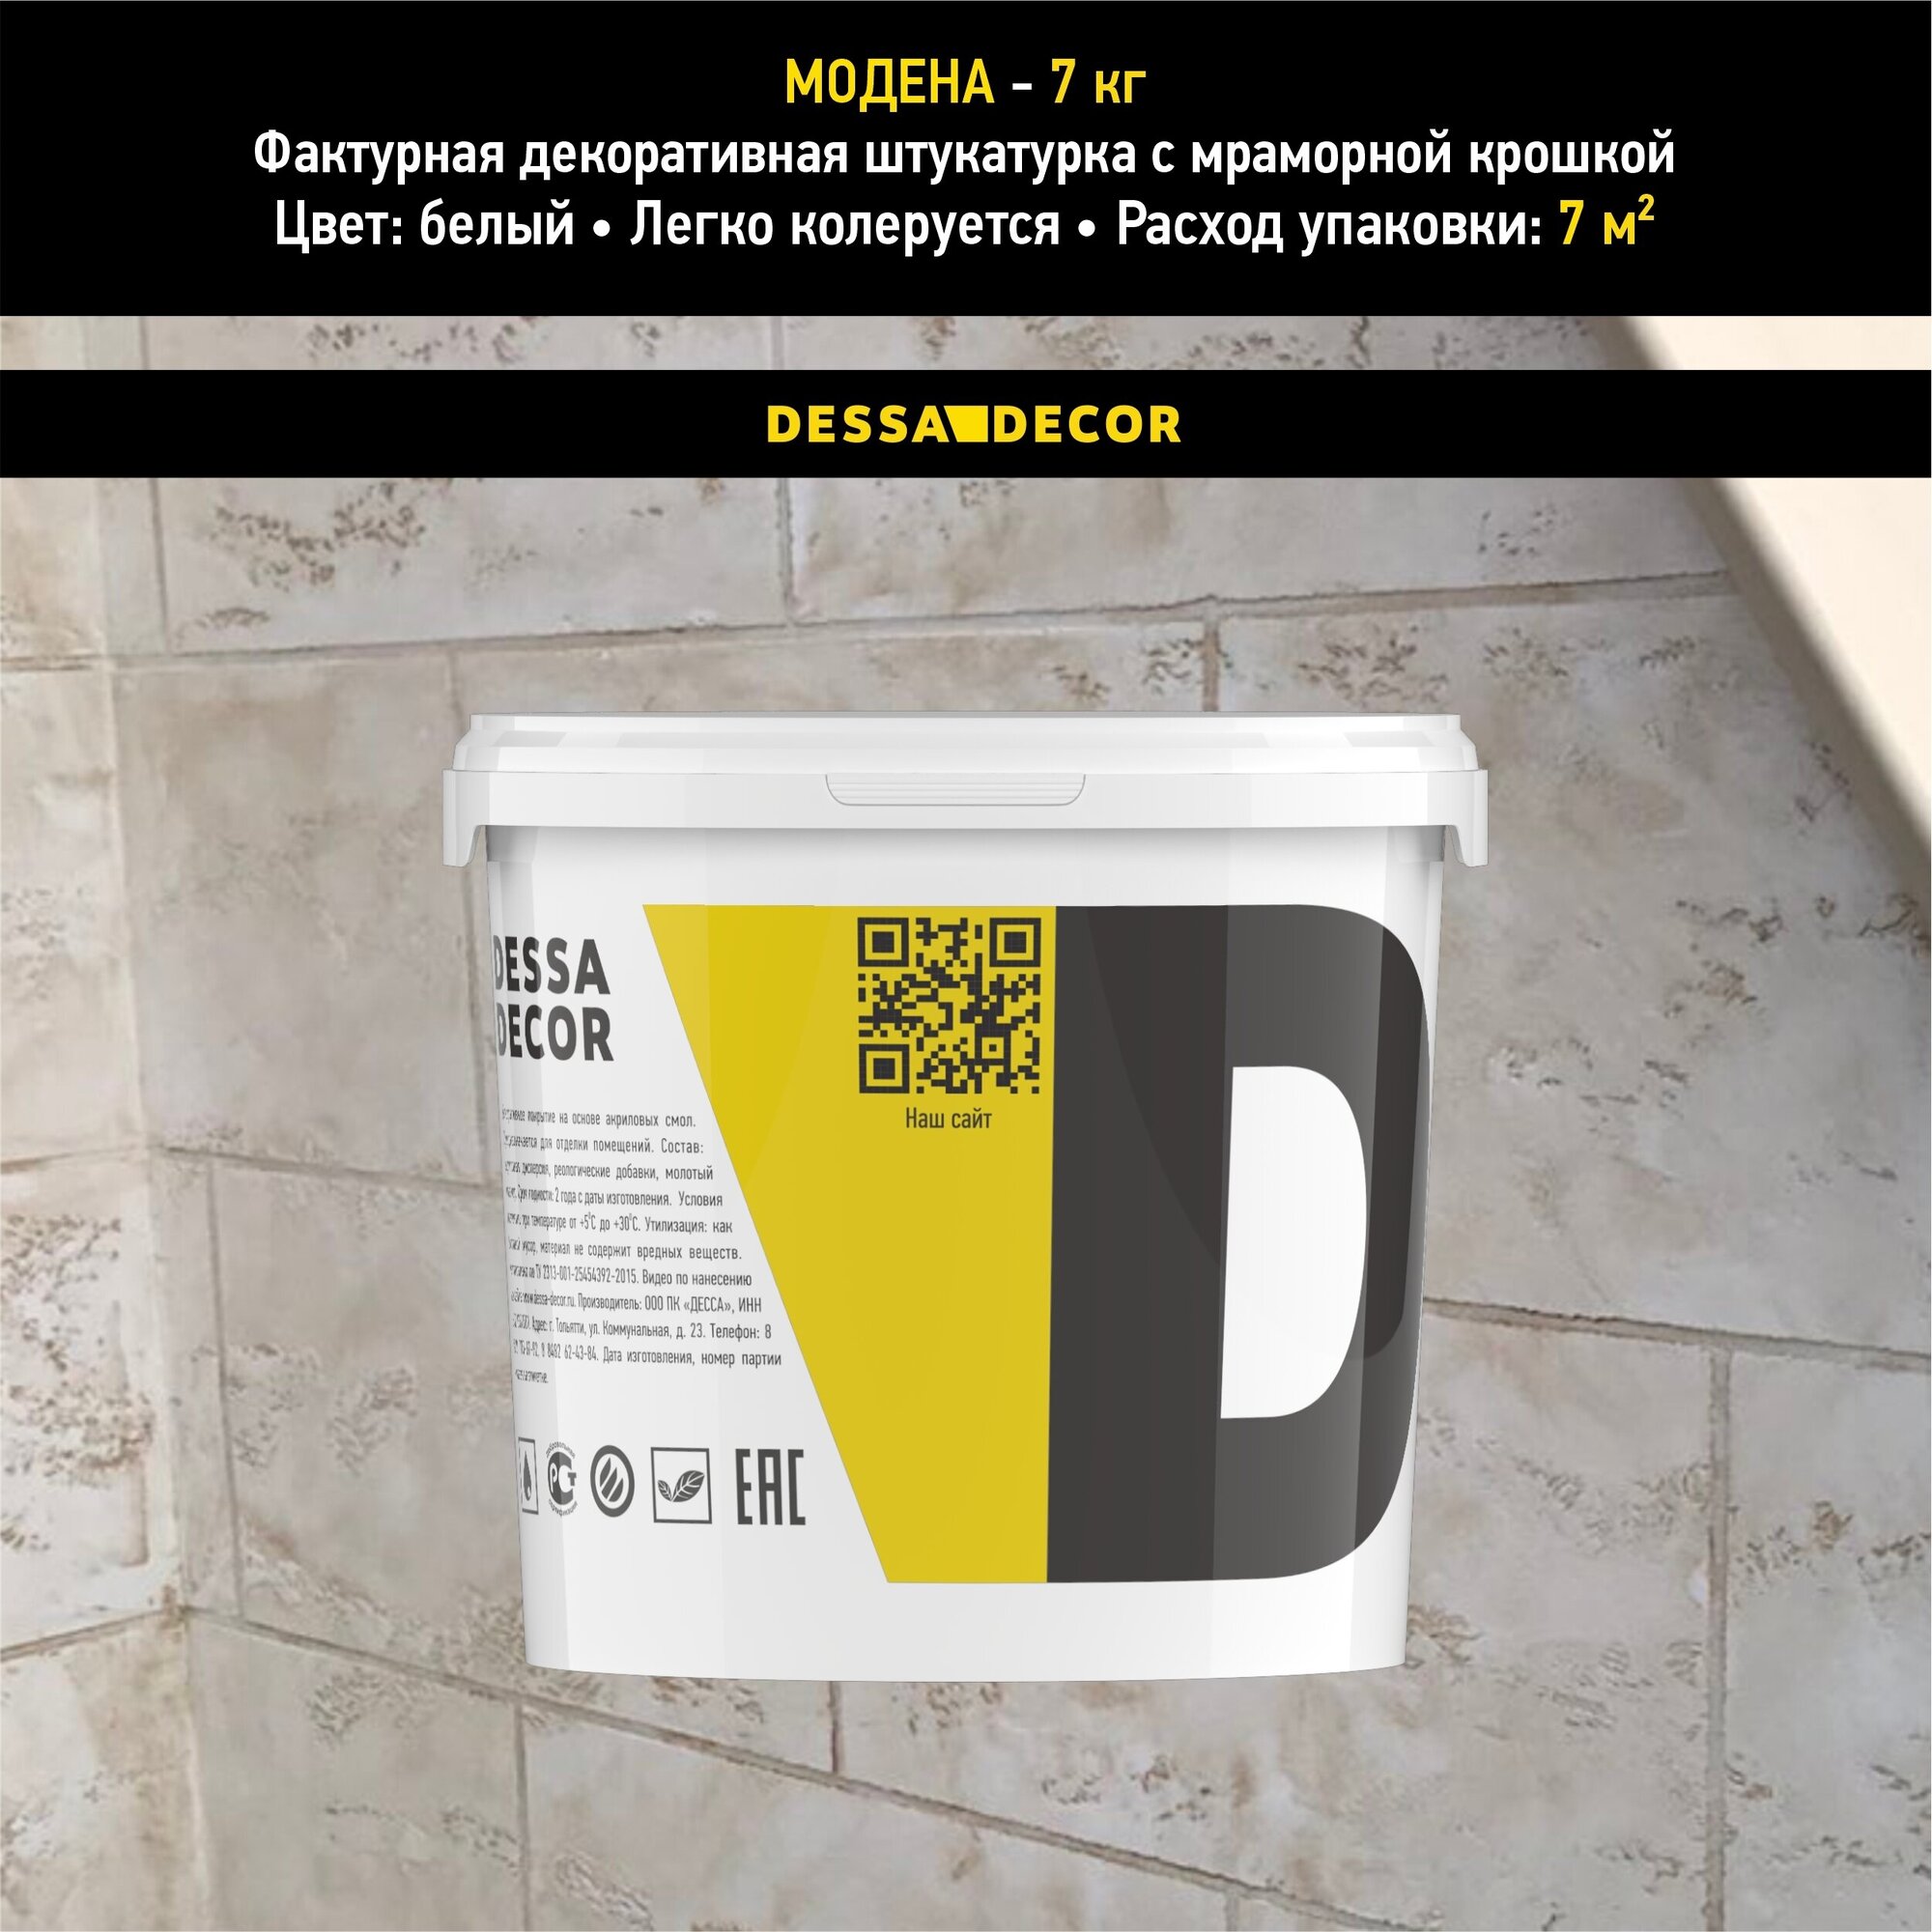 Декоративная штукатурка DESSA DECOR Модена 7 кг, пластичная для имитации бетона, травертина, камня, с мраморной крошкой 0,2-0,5 мм